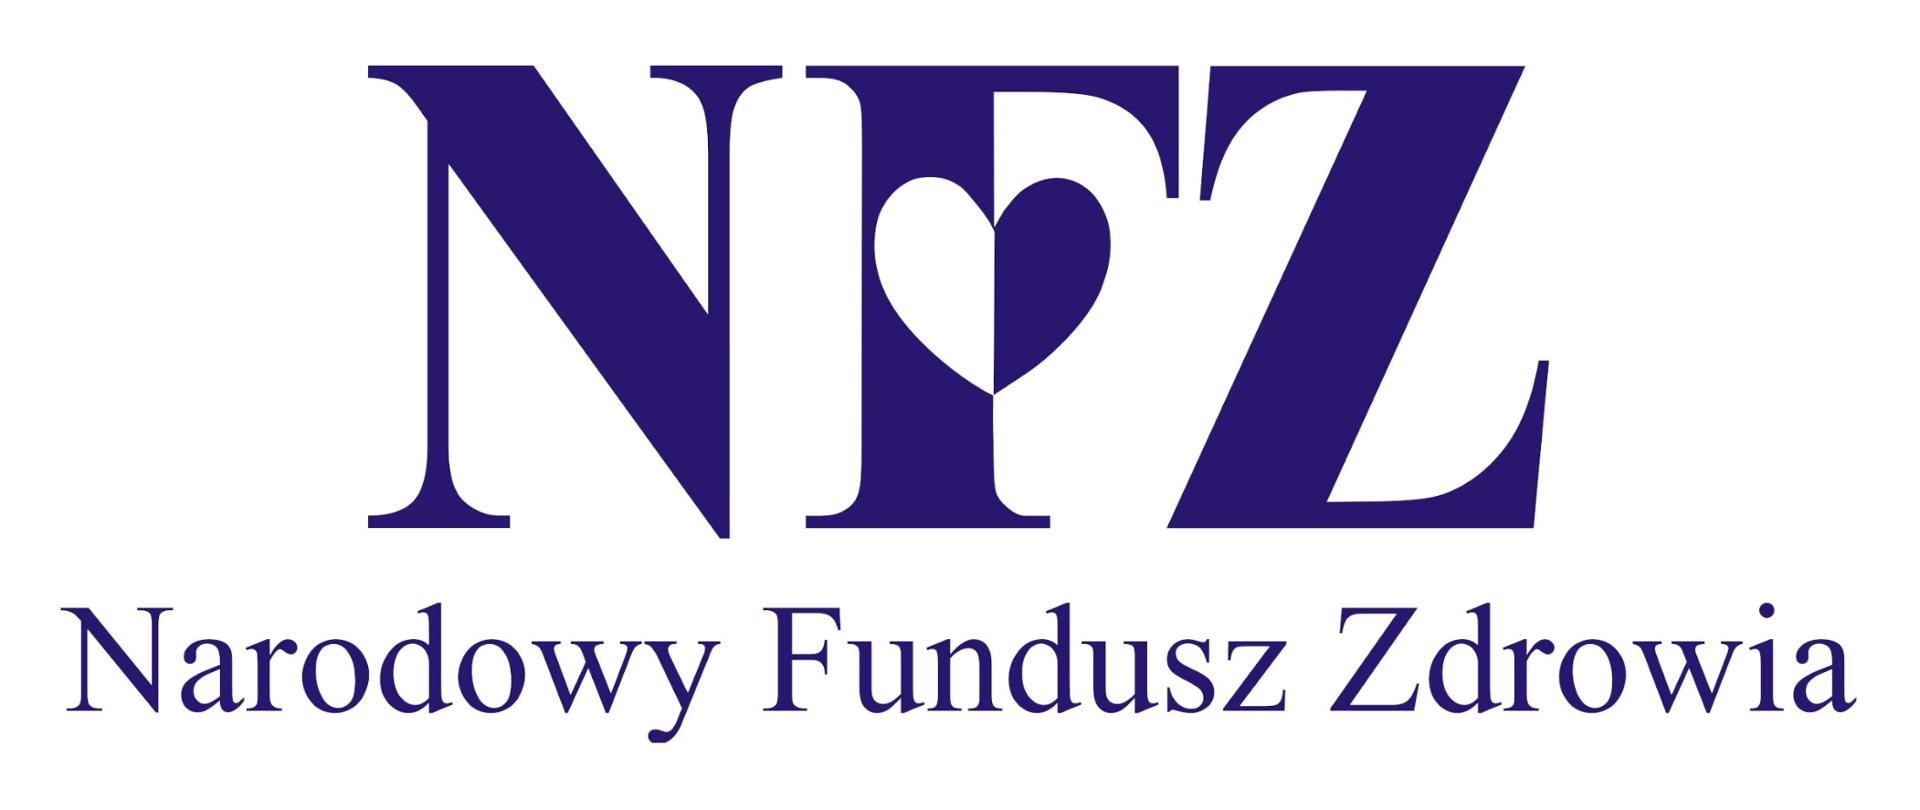 Granatowe logo Narodowego Fundusz Zdrowia, NFZ z sercem w literze F